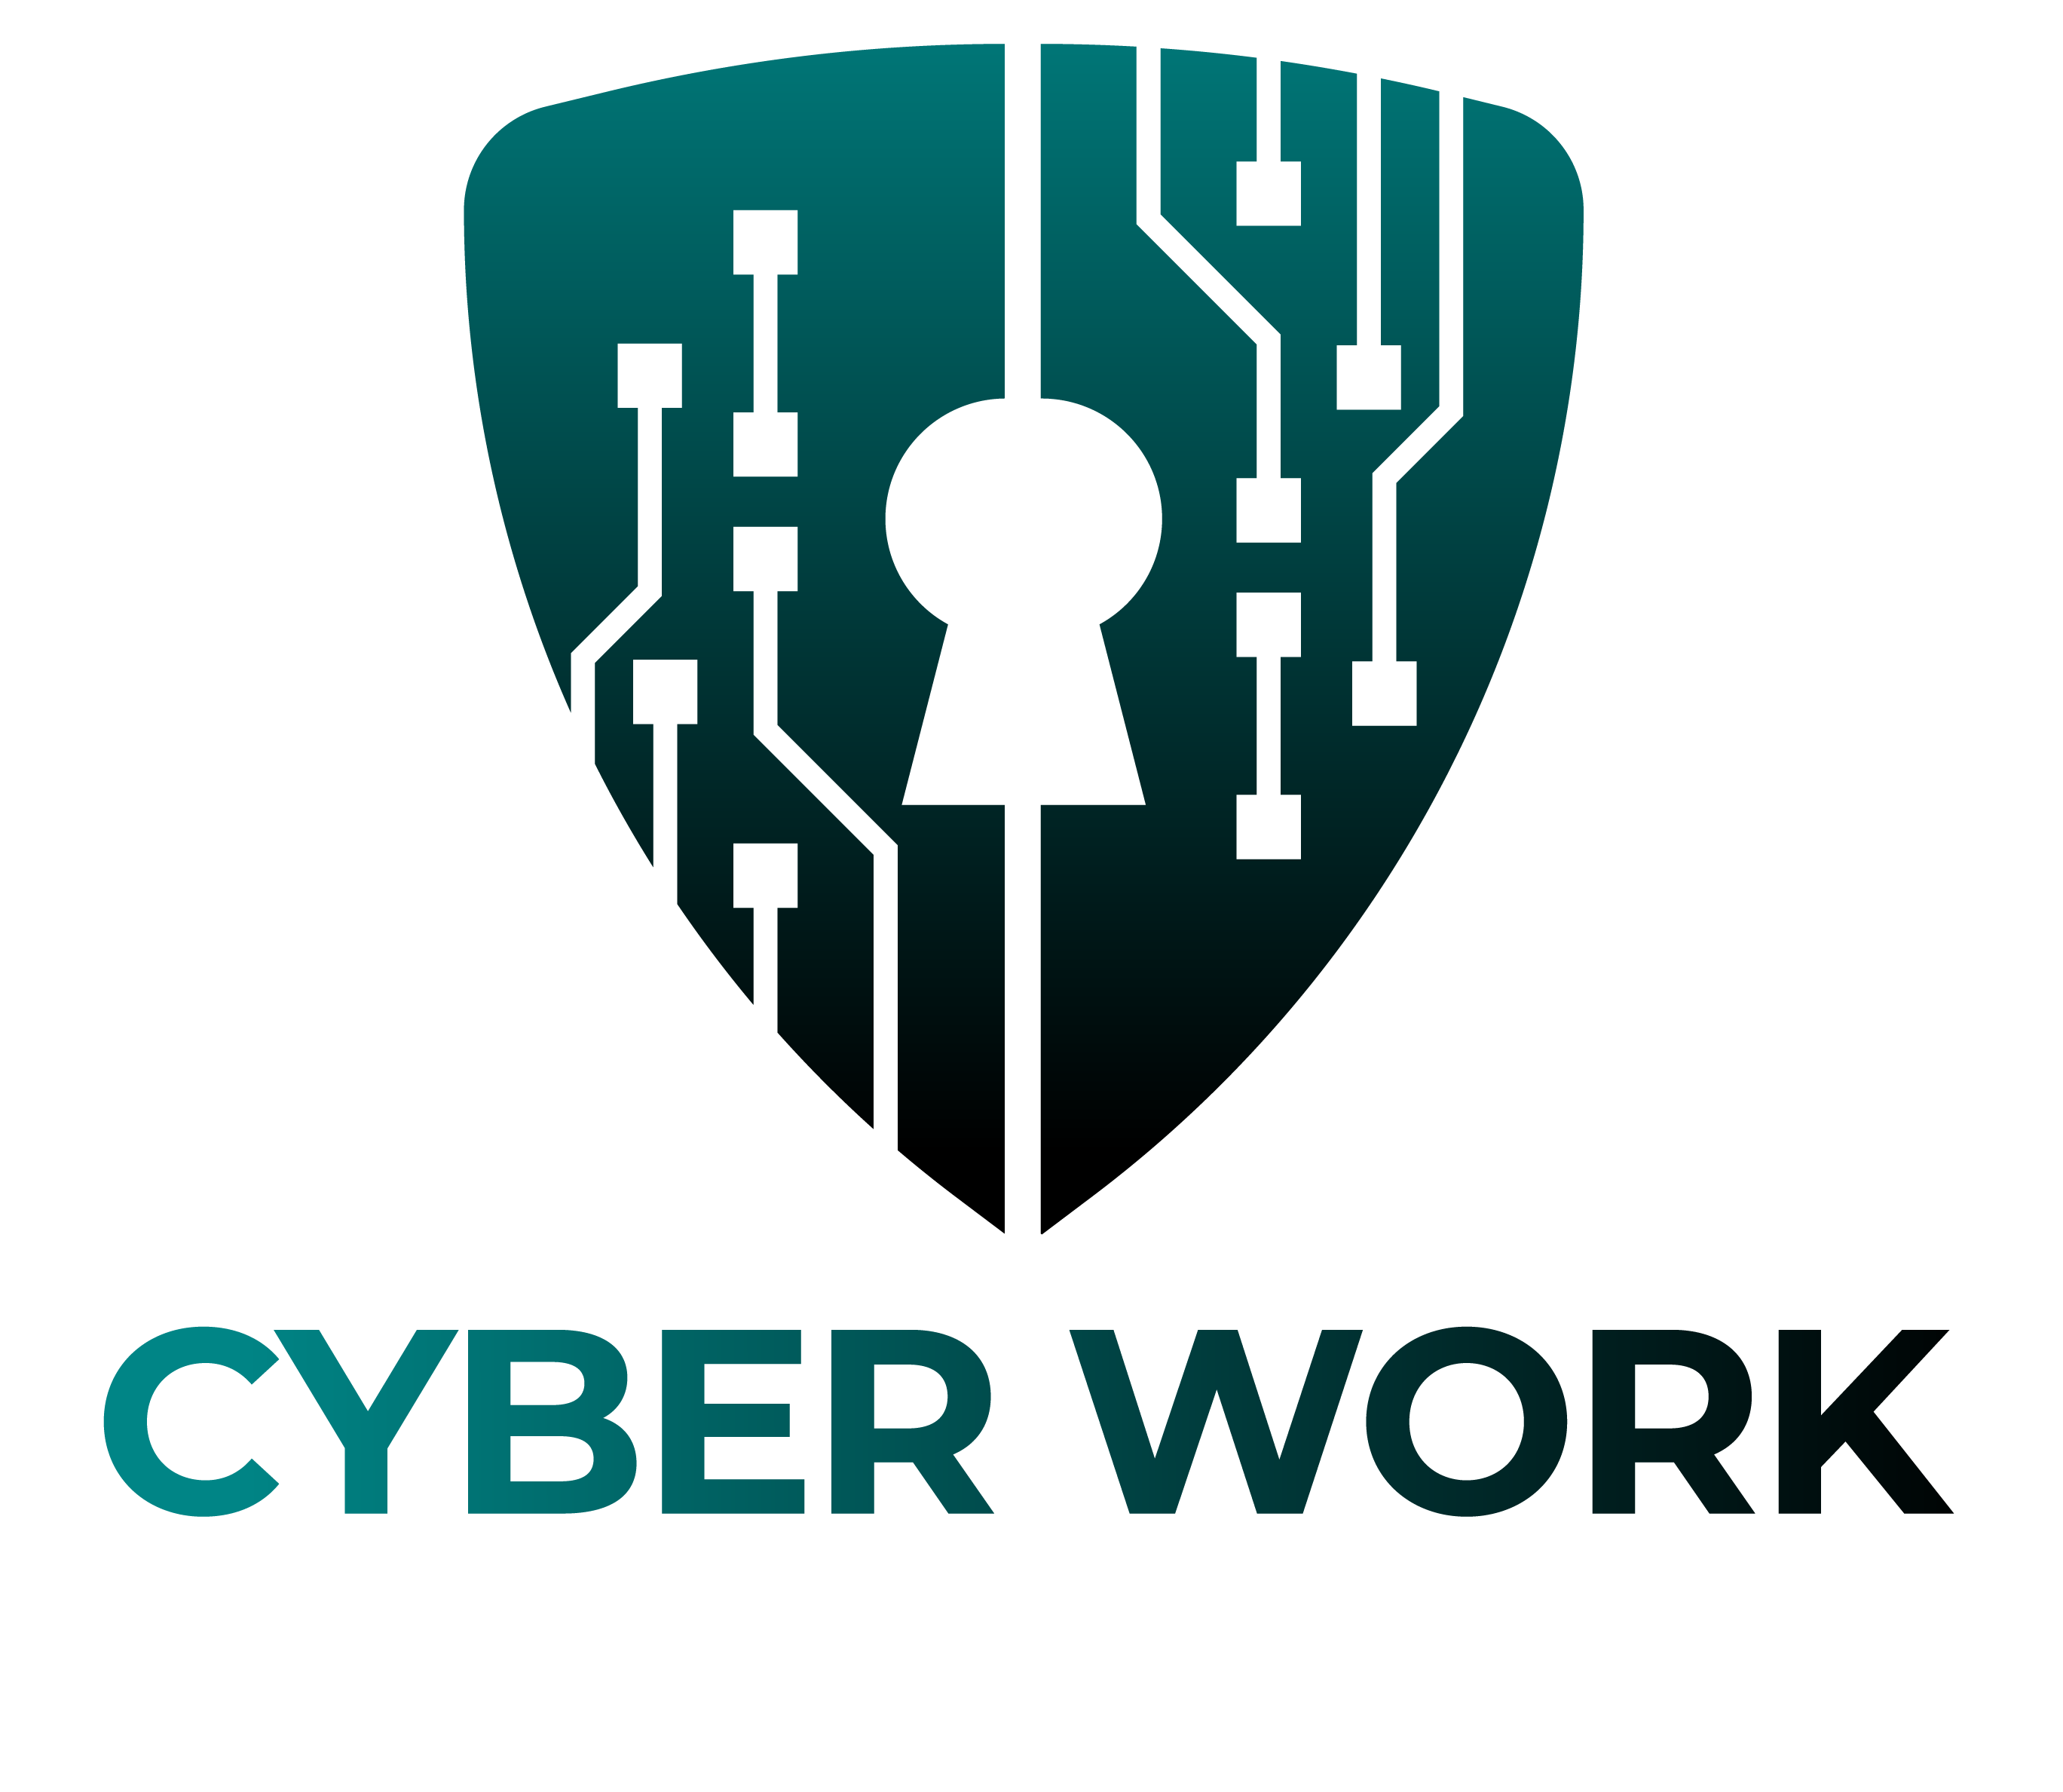 Cyberwork